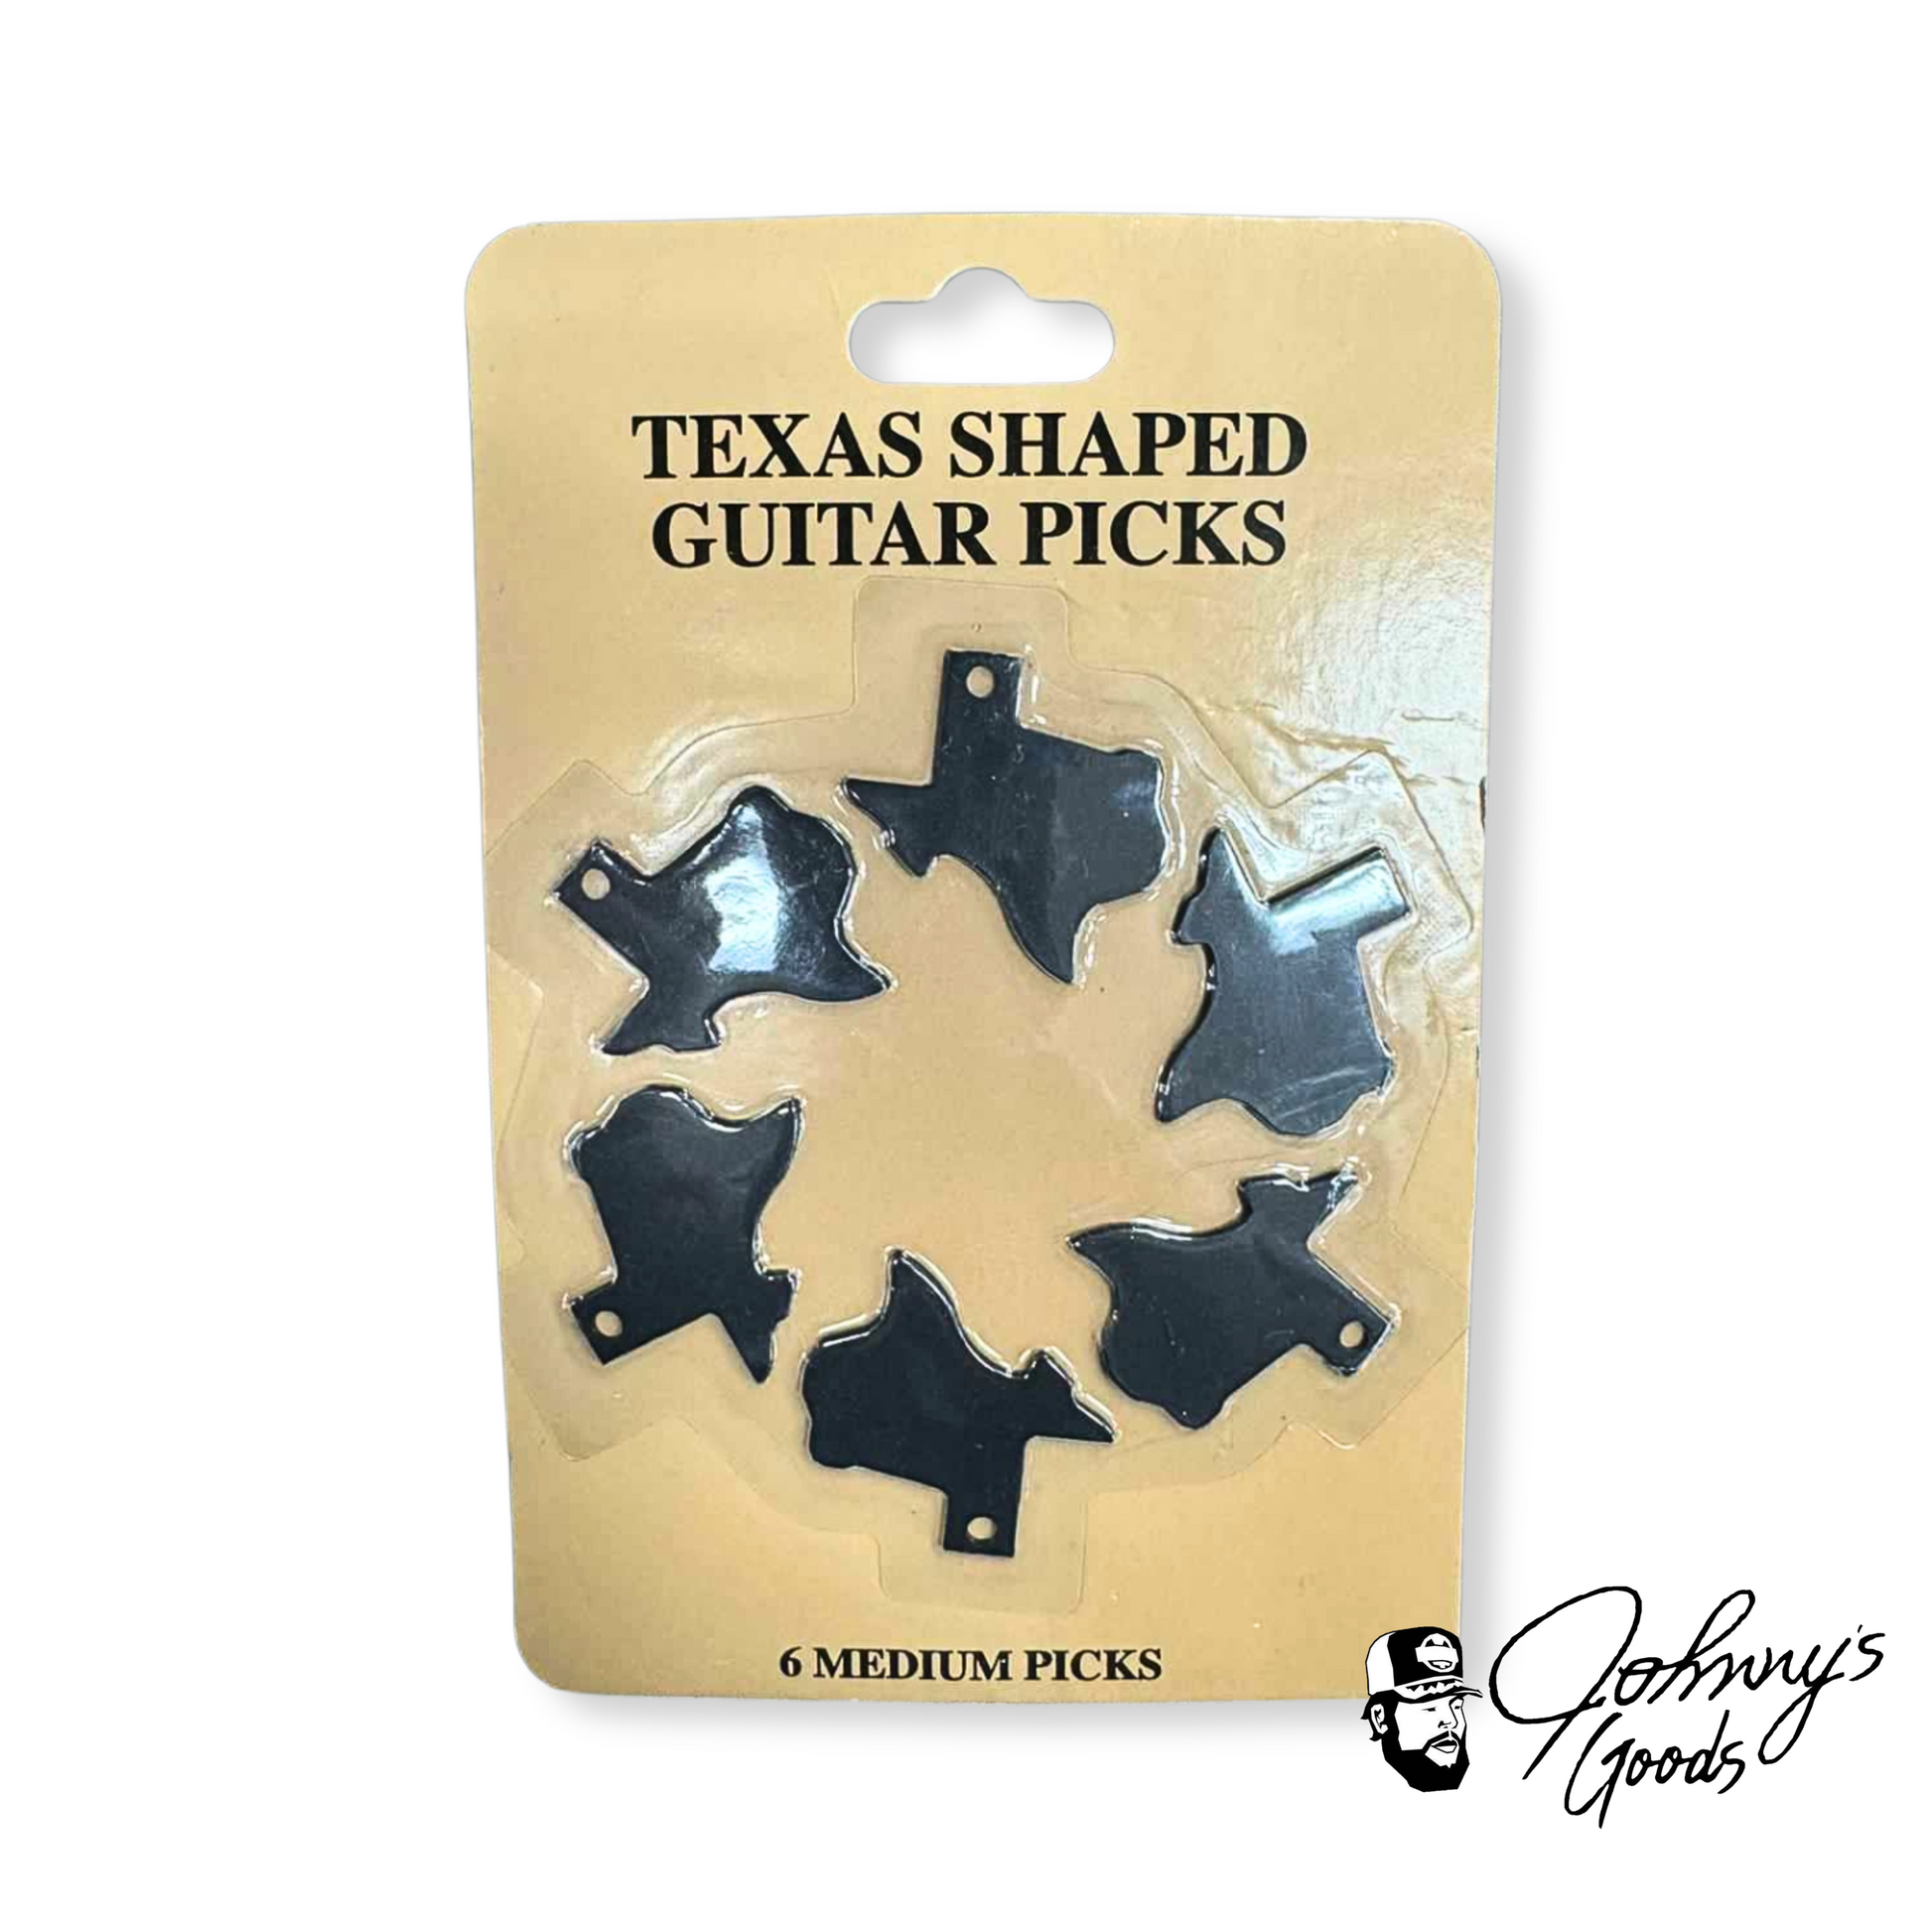 Texas Shaped Guitar Picks